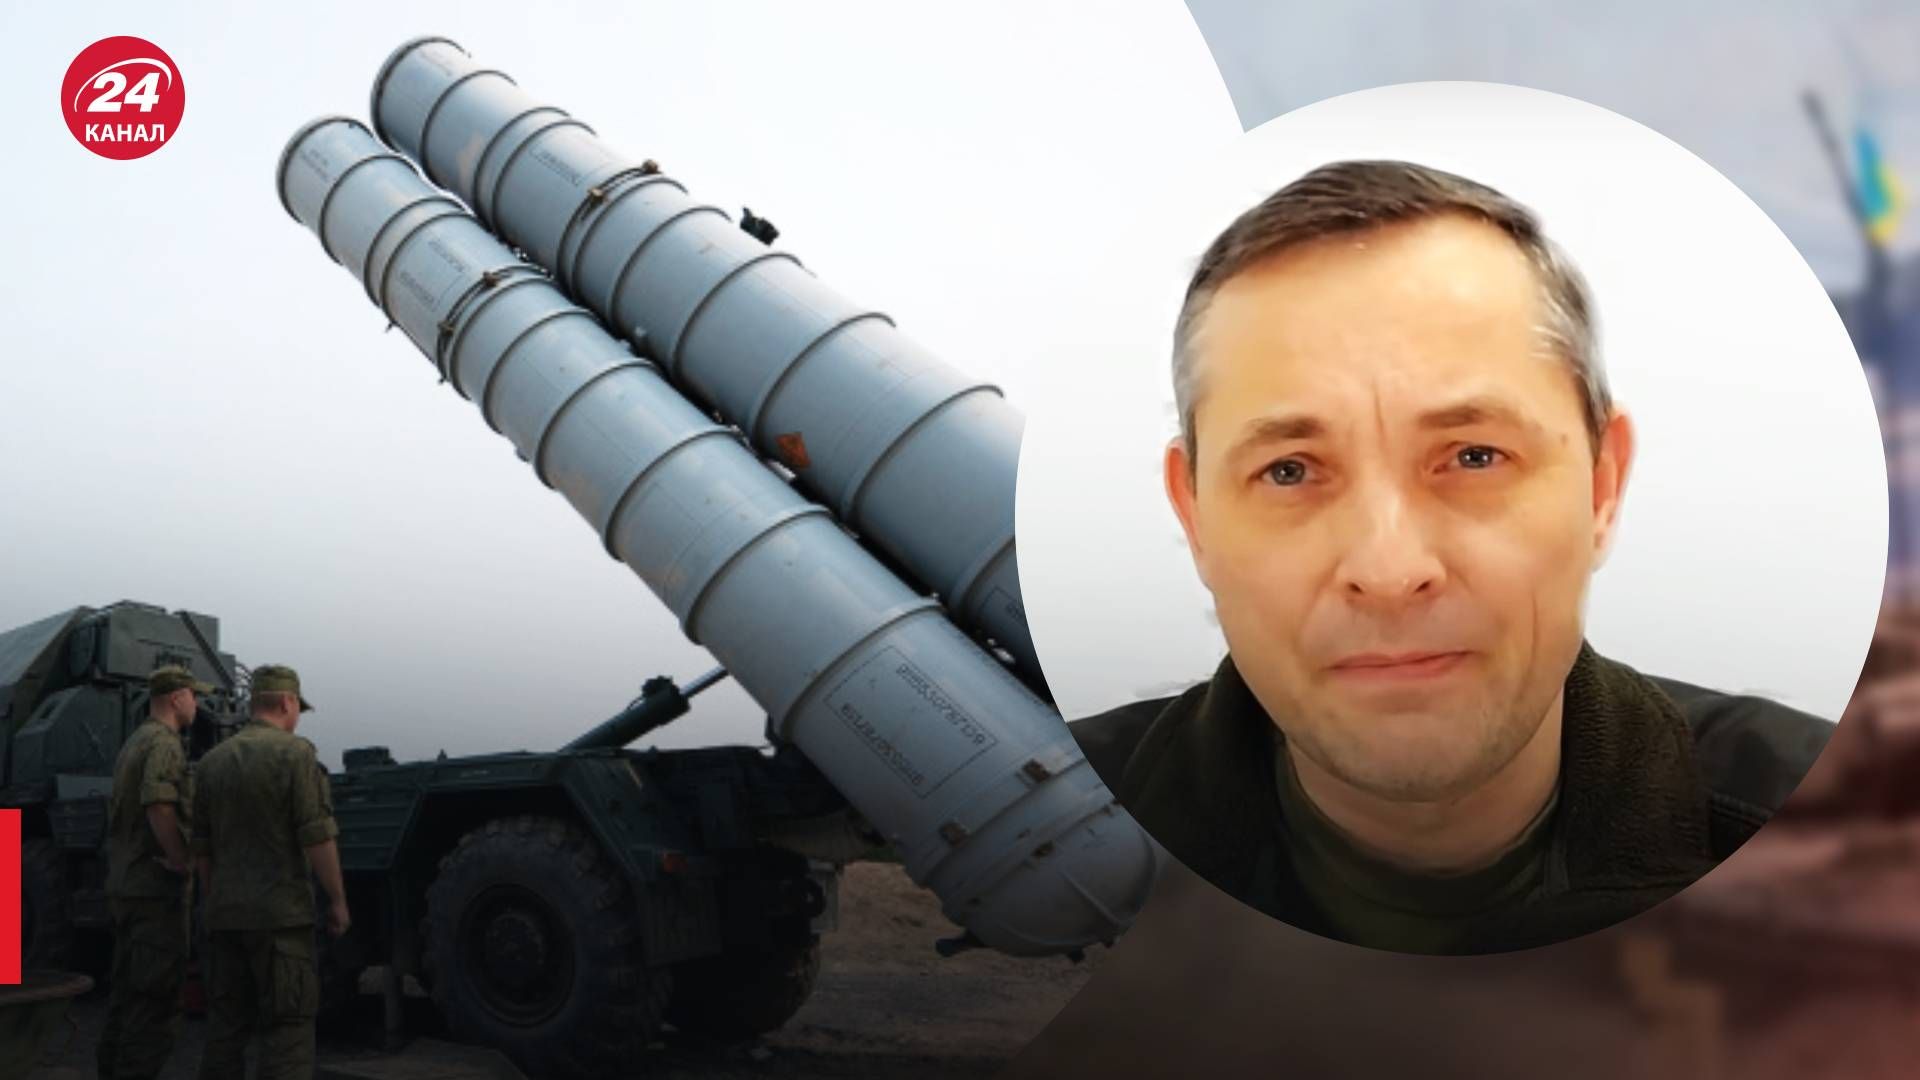 Ракеты С-300 - Игнат рассказал, сможет ли Украина их сбивать - 24 Канал